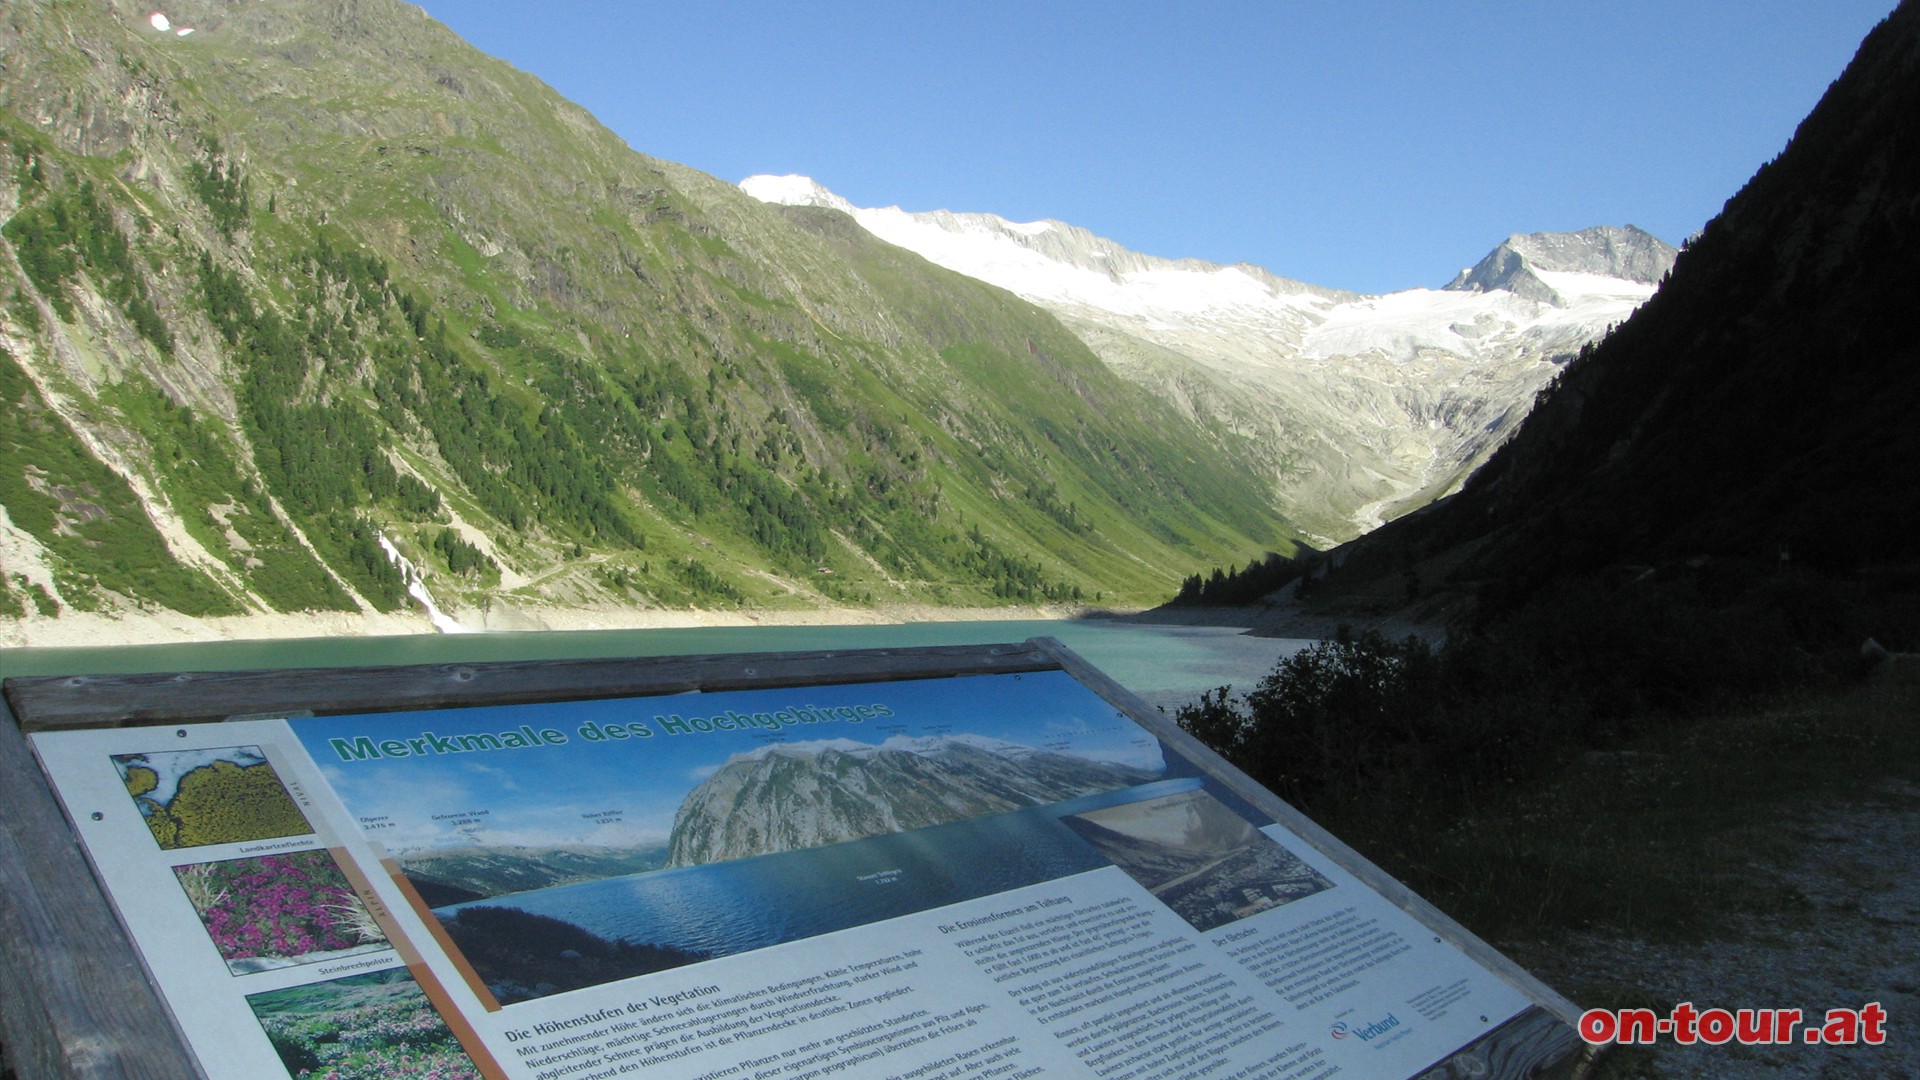 Das leuchtende Schlegeiskees am Ende des Schlegeisgrundes, mit etwa 5 km Flche der grte Gletscher der Zillertaler Alpen, weist den Weg nach oben.